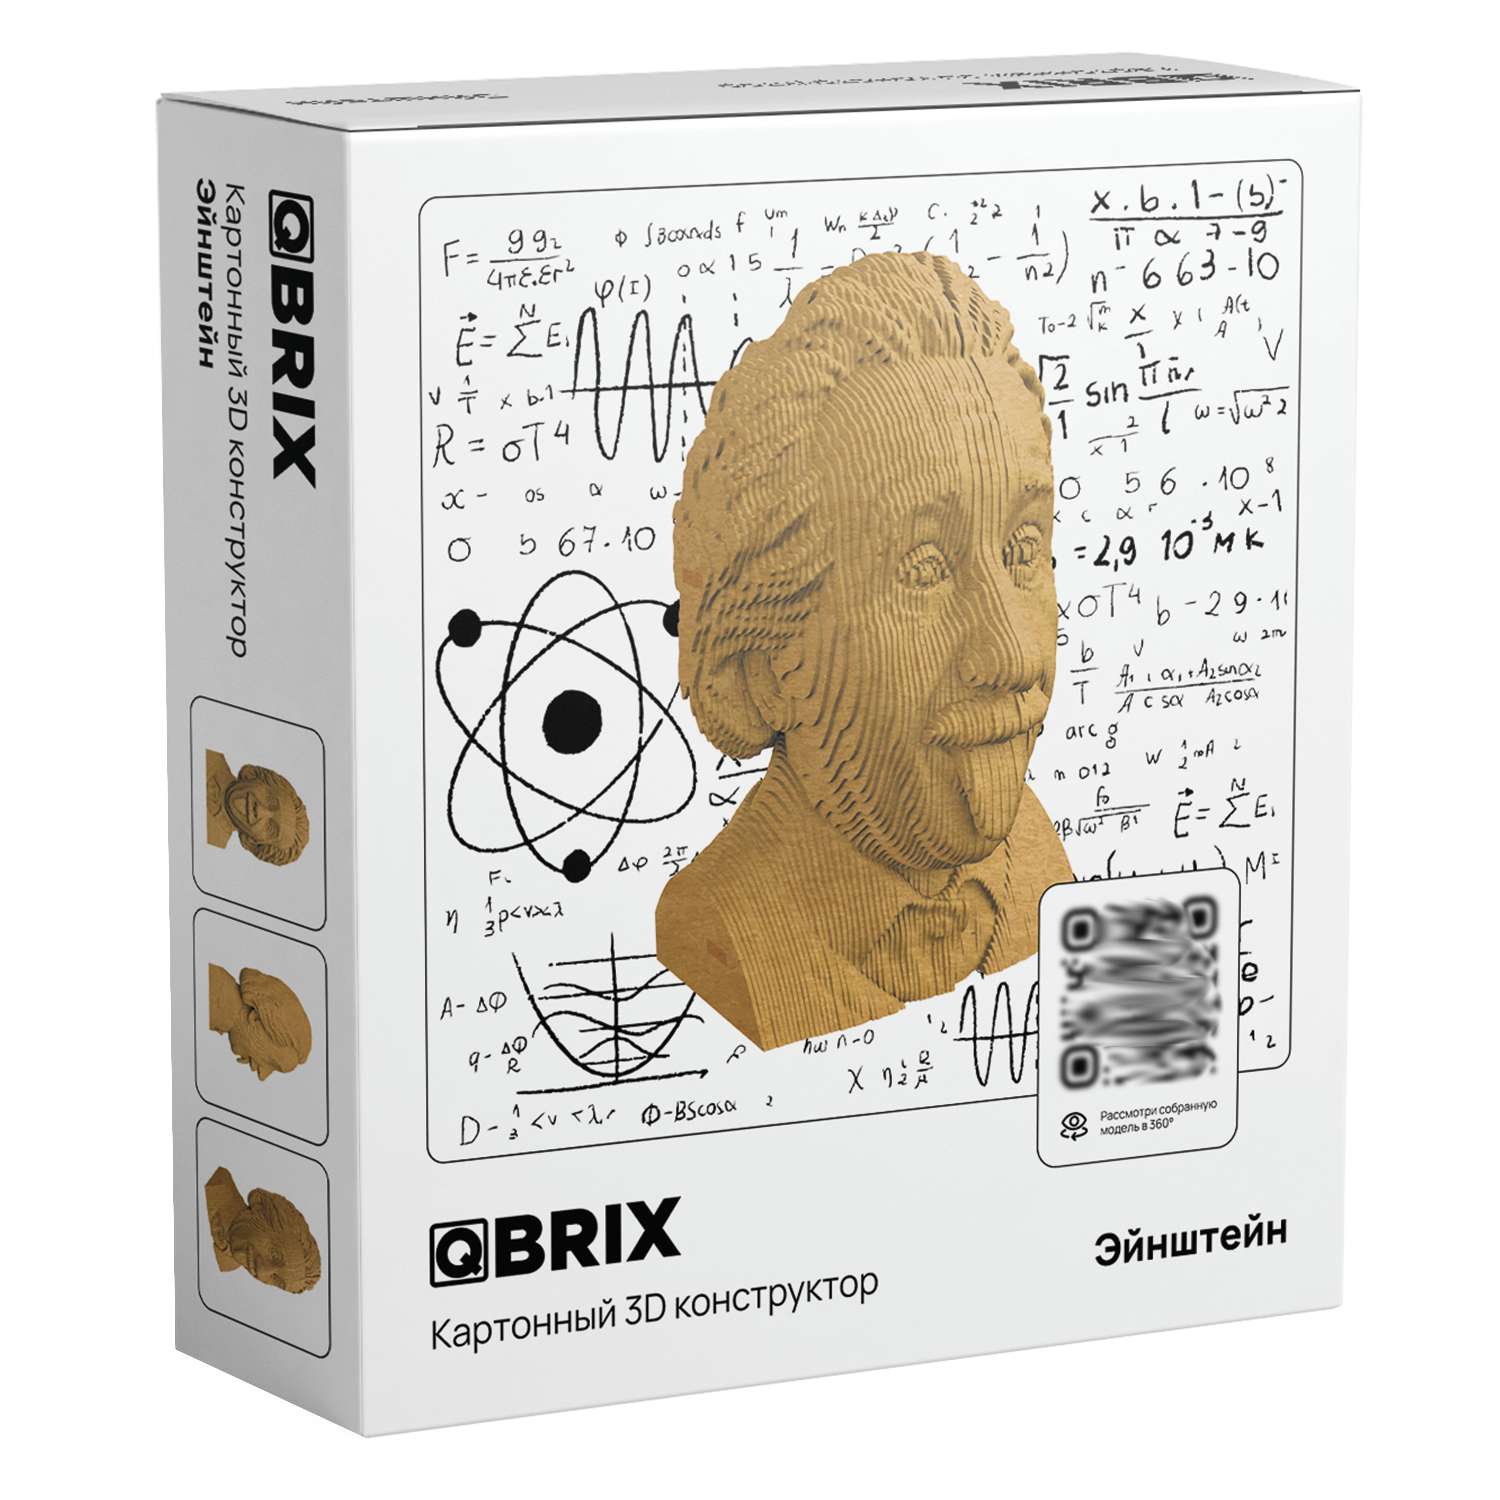 Конструктор QBRIX 3D картонный Эйнштейн 20002 20002 - фото 1